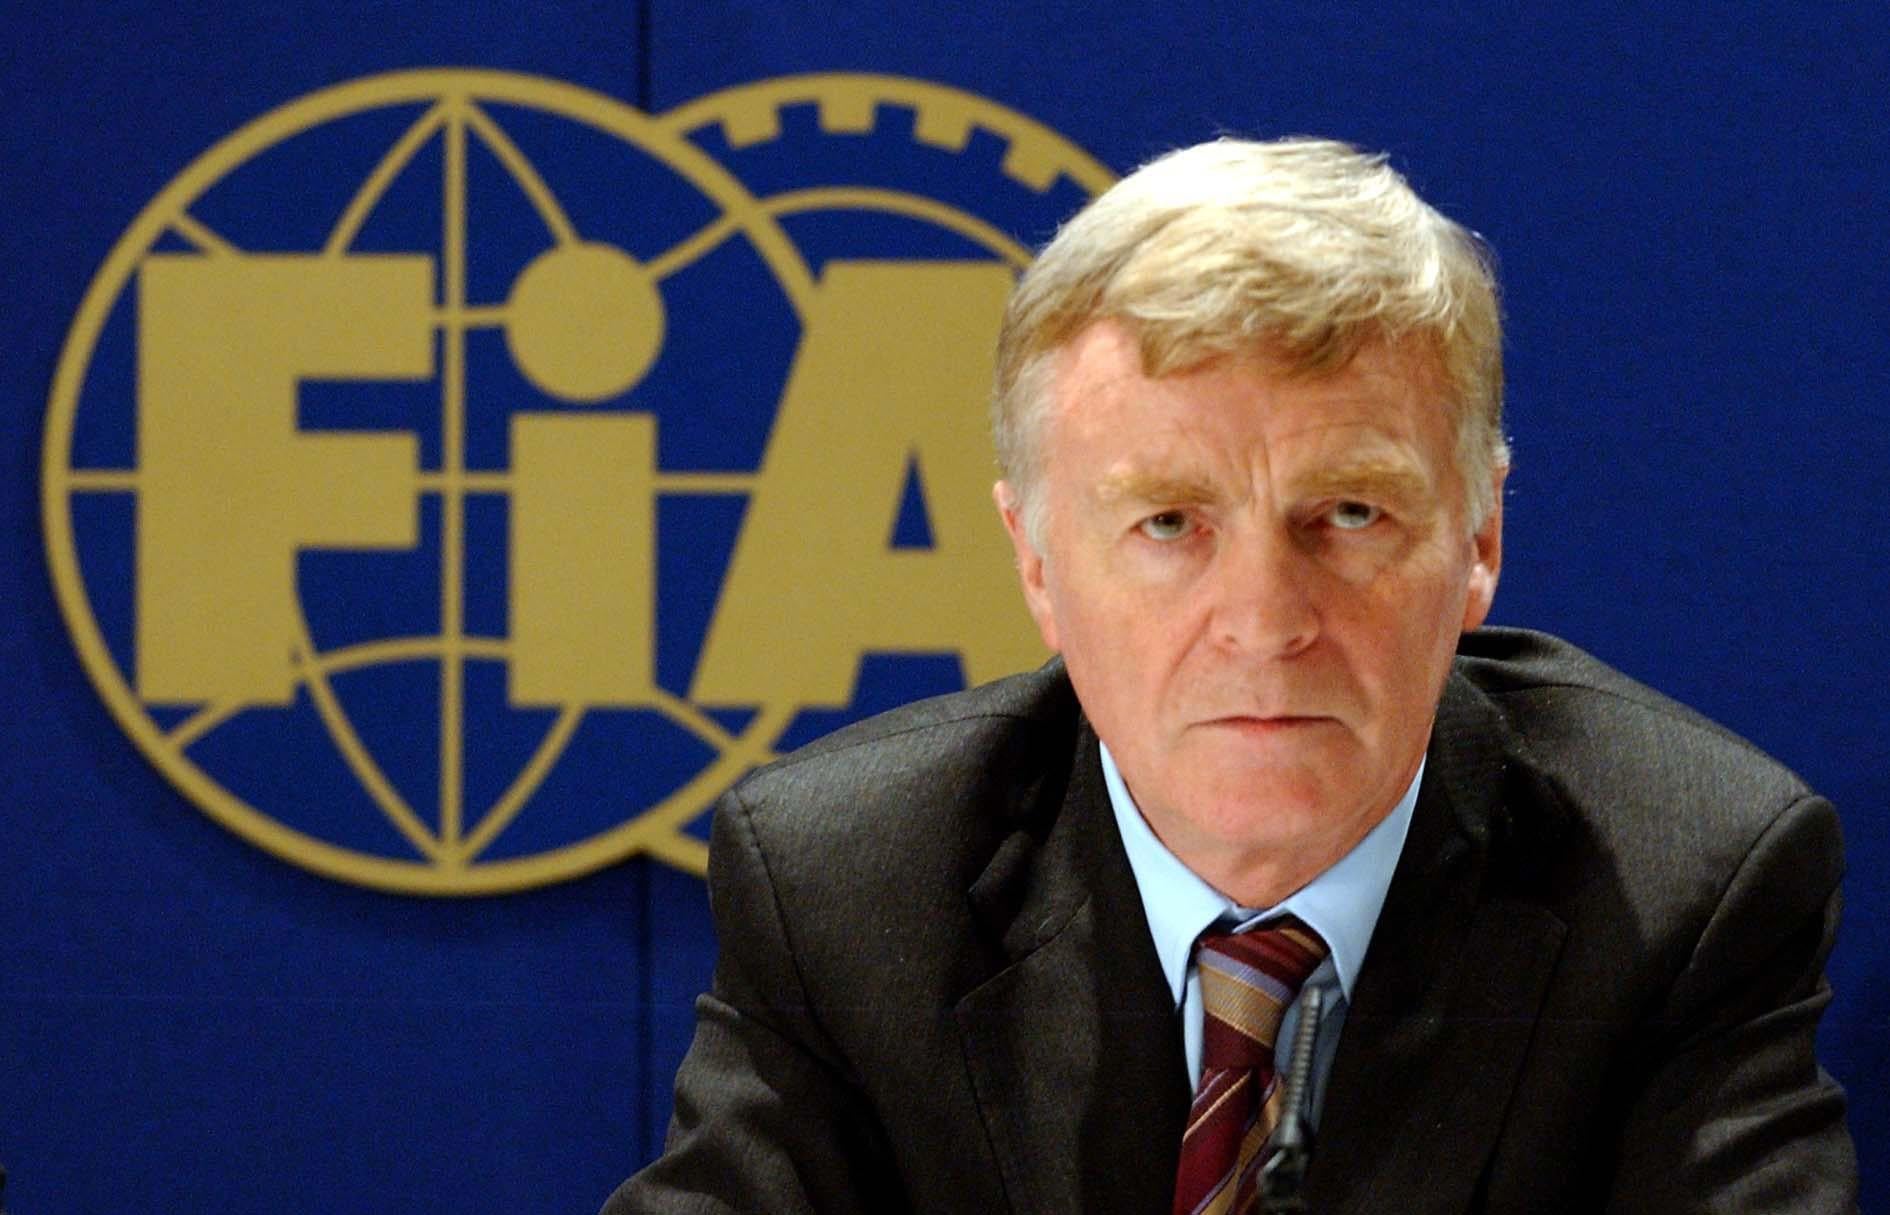 Max Mosley fue expresidente del organismo rector de los deportes de motor, FIA, durante 16 años entre 1993 y 2009